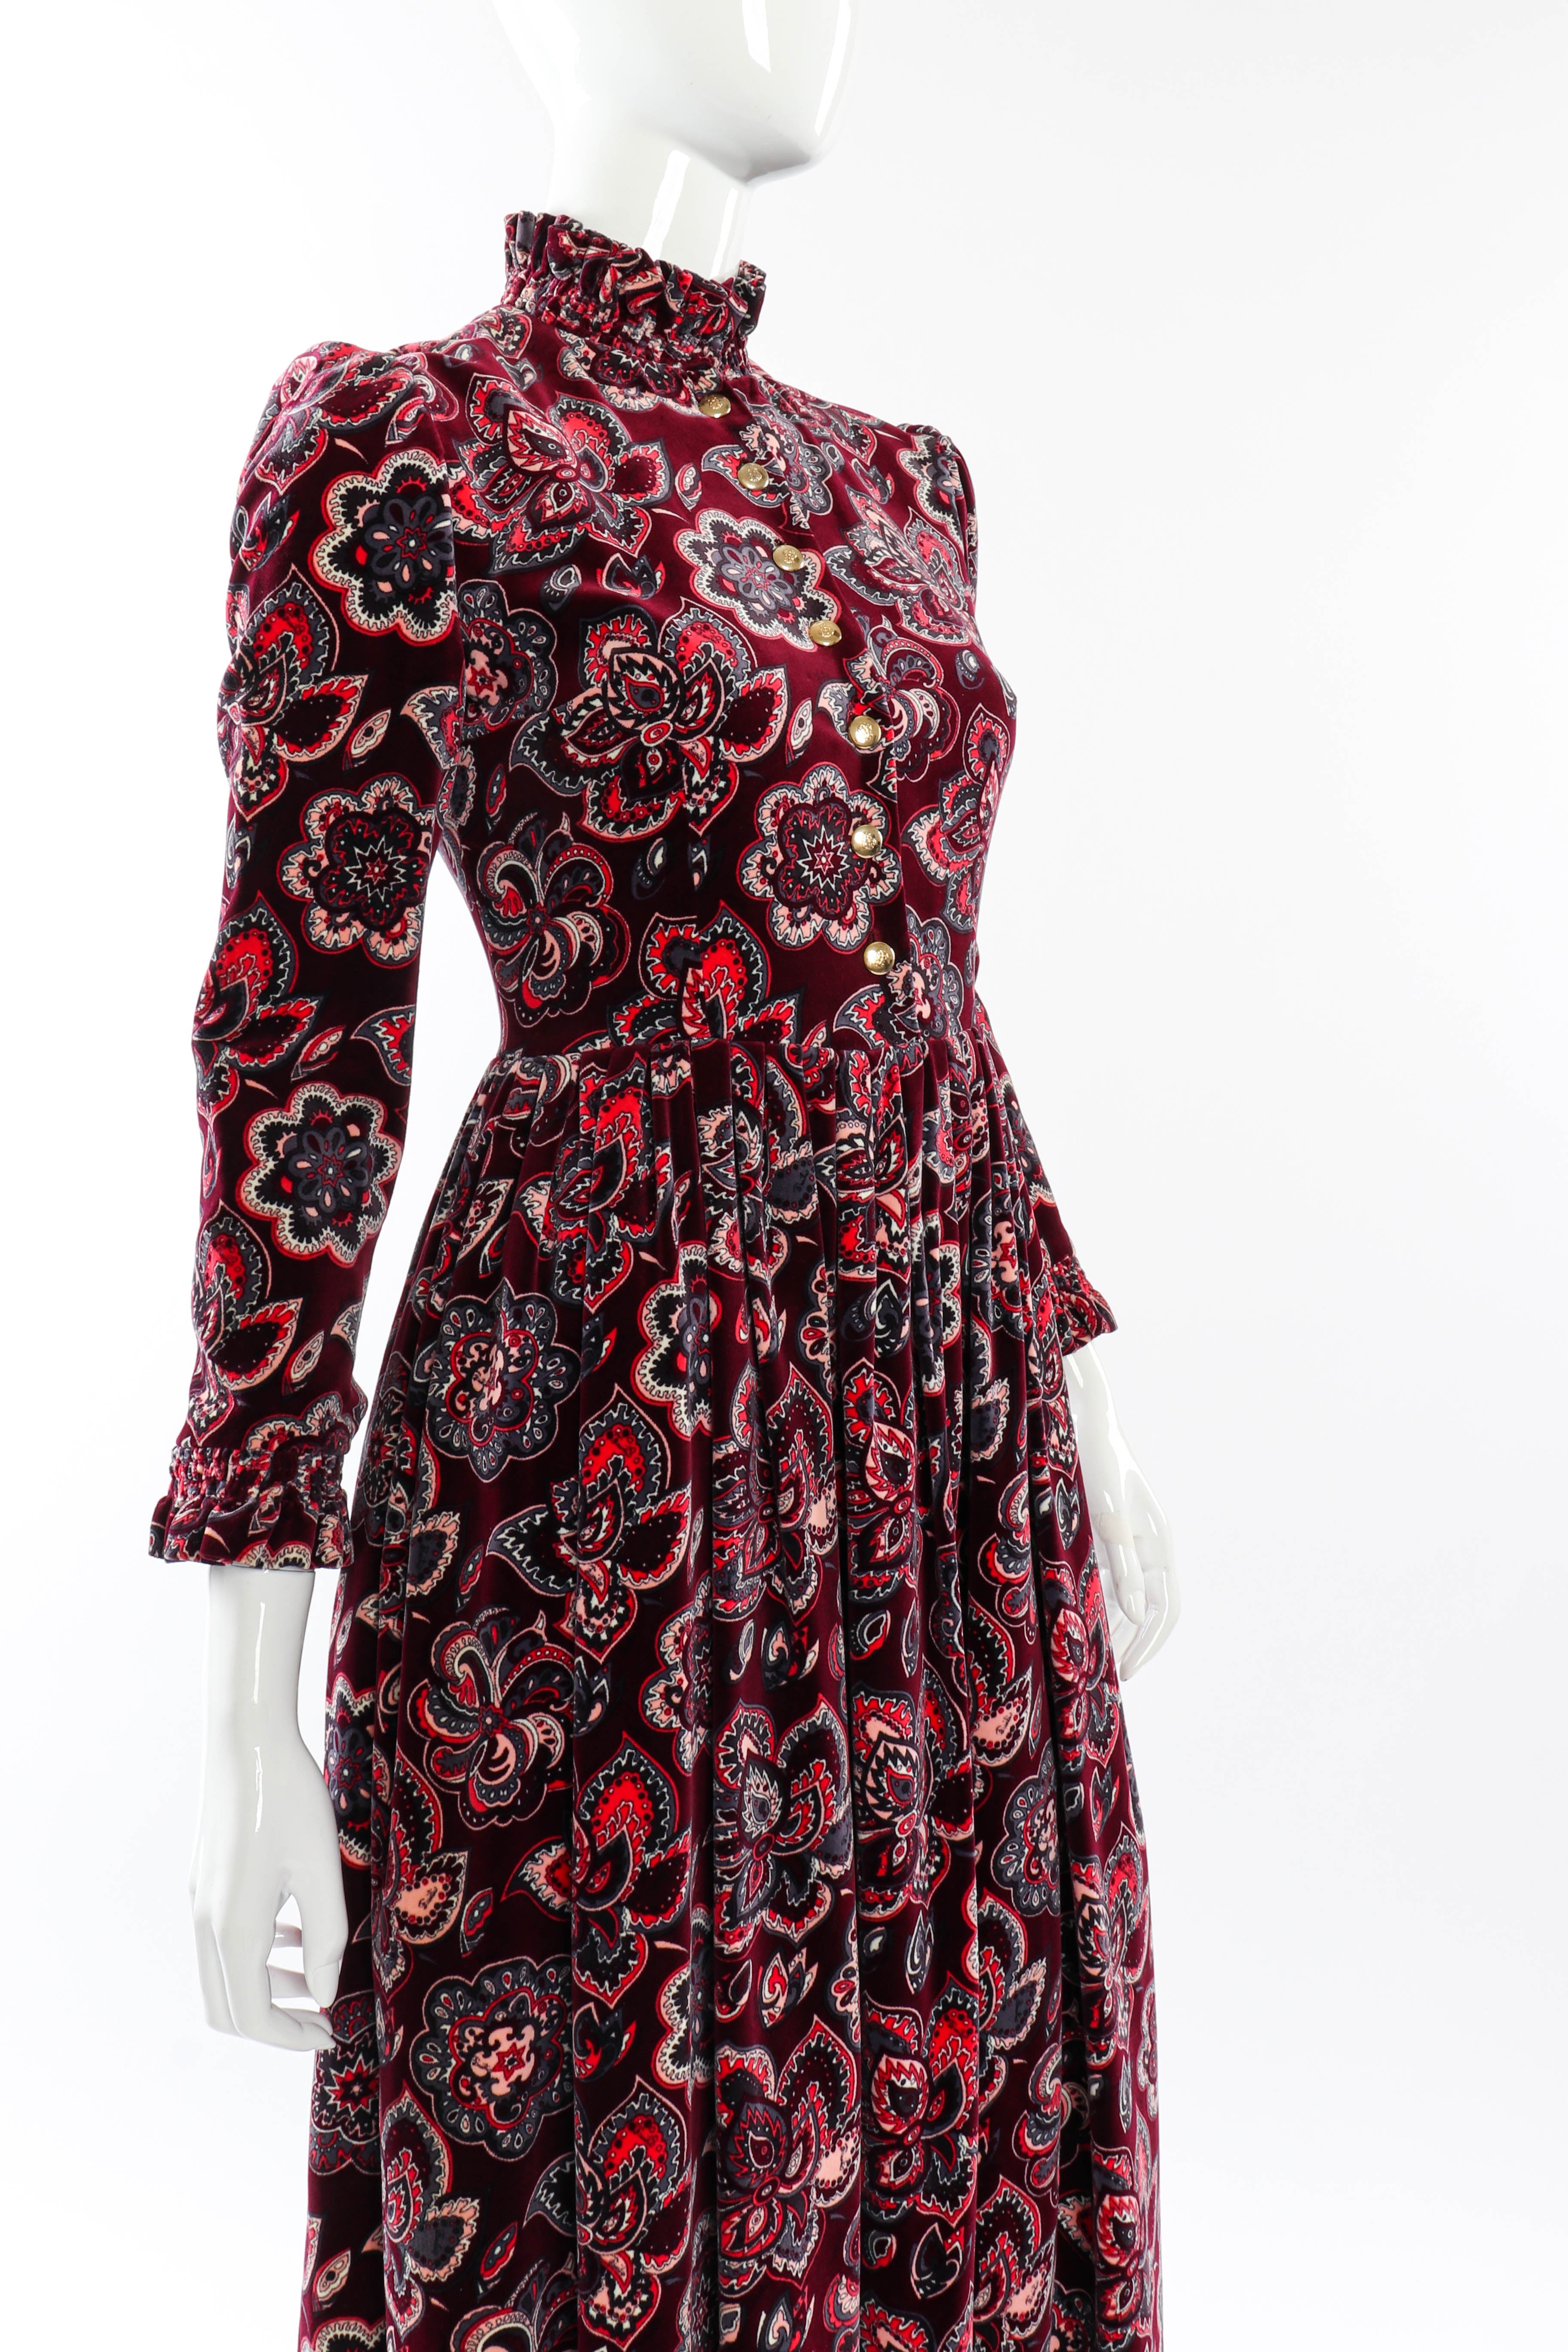 Vintage Emilio Pucci Velvet Mandala Dress front on mannequin closeup @recessla